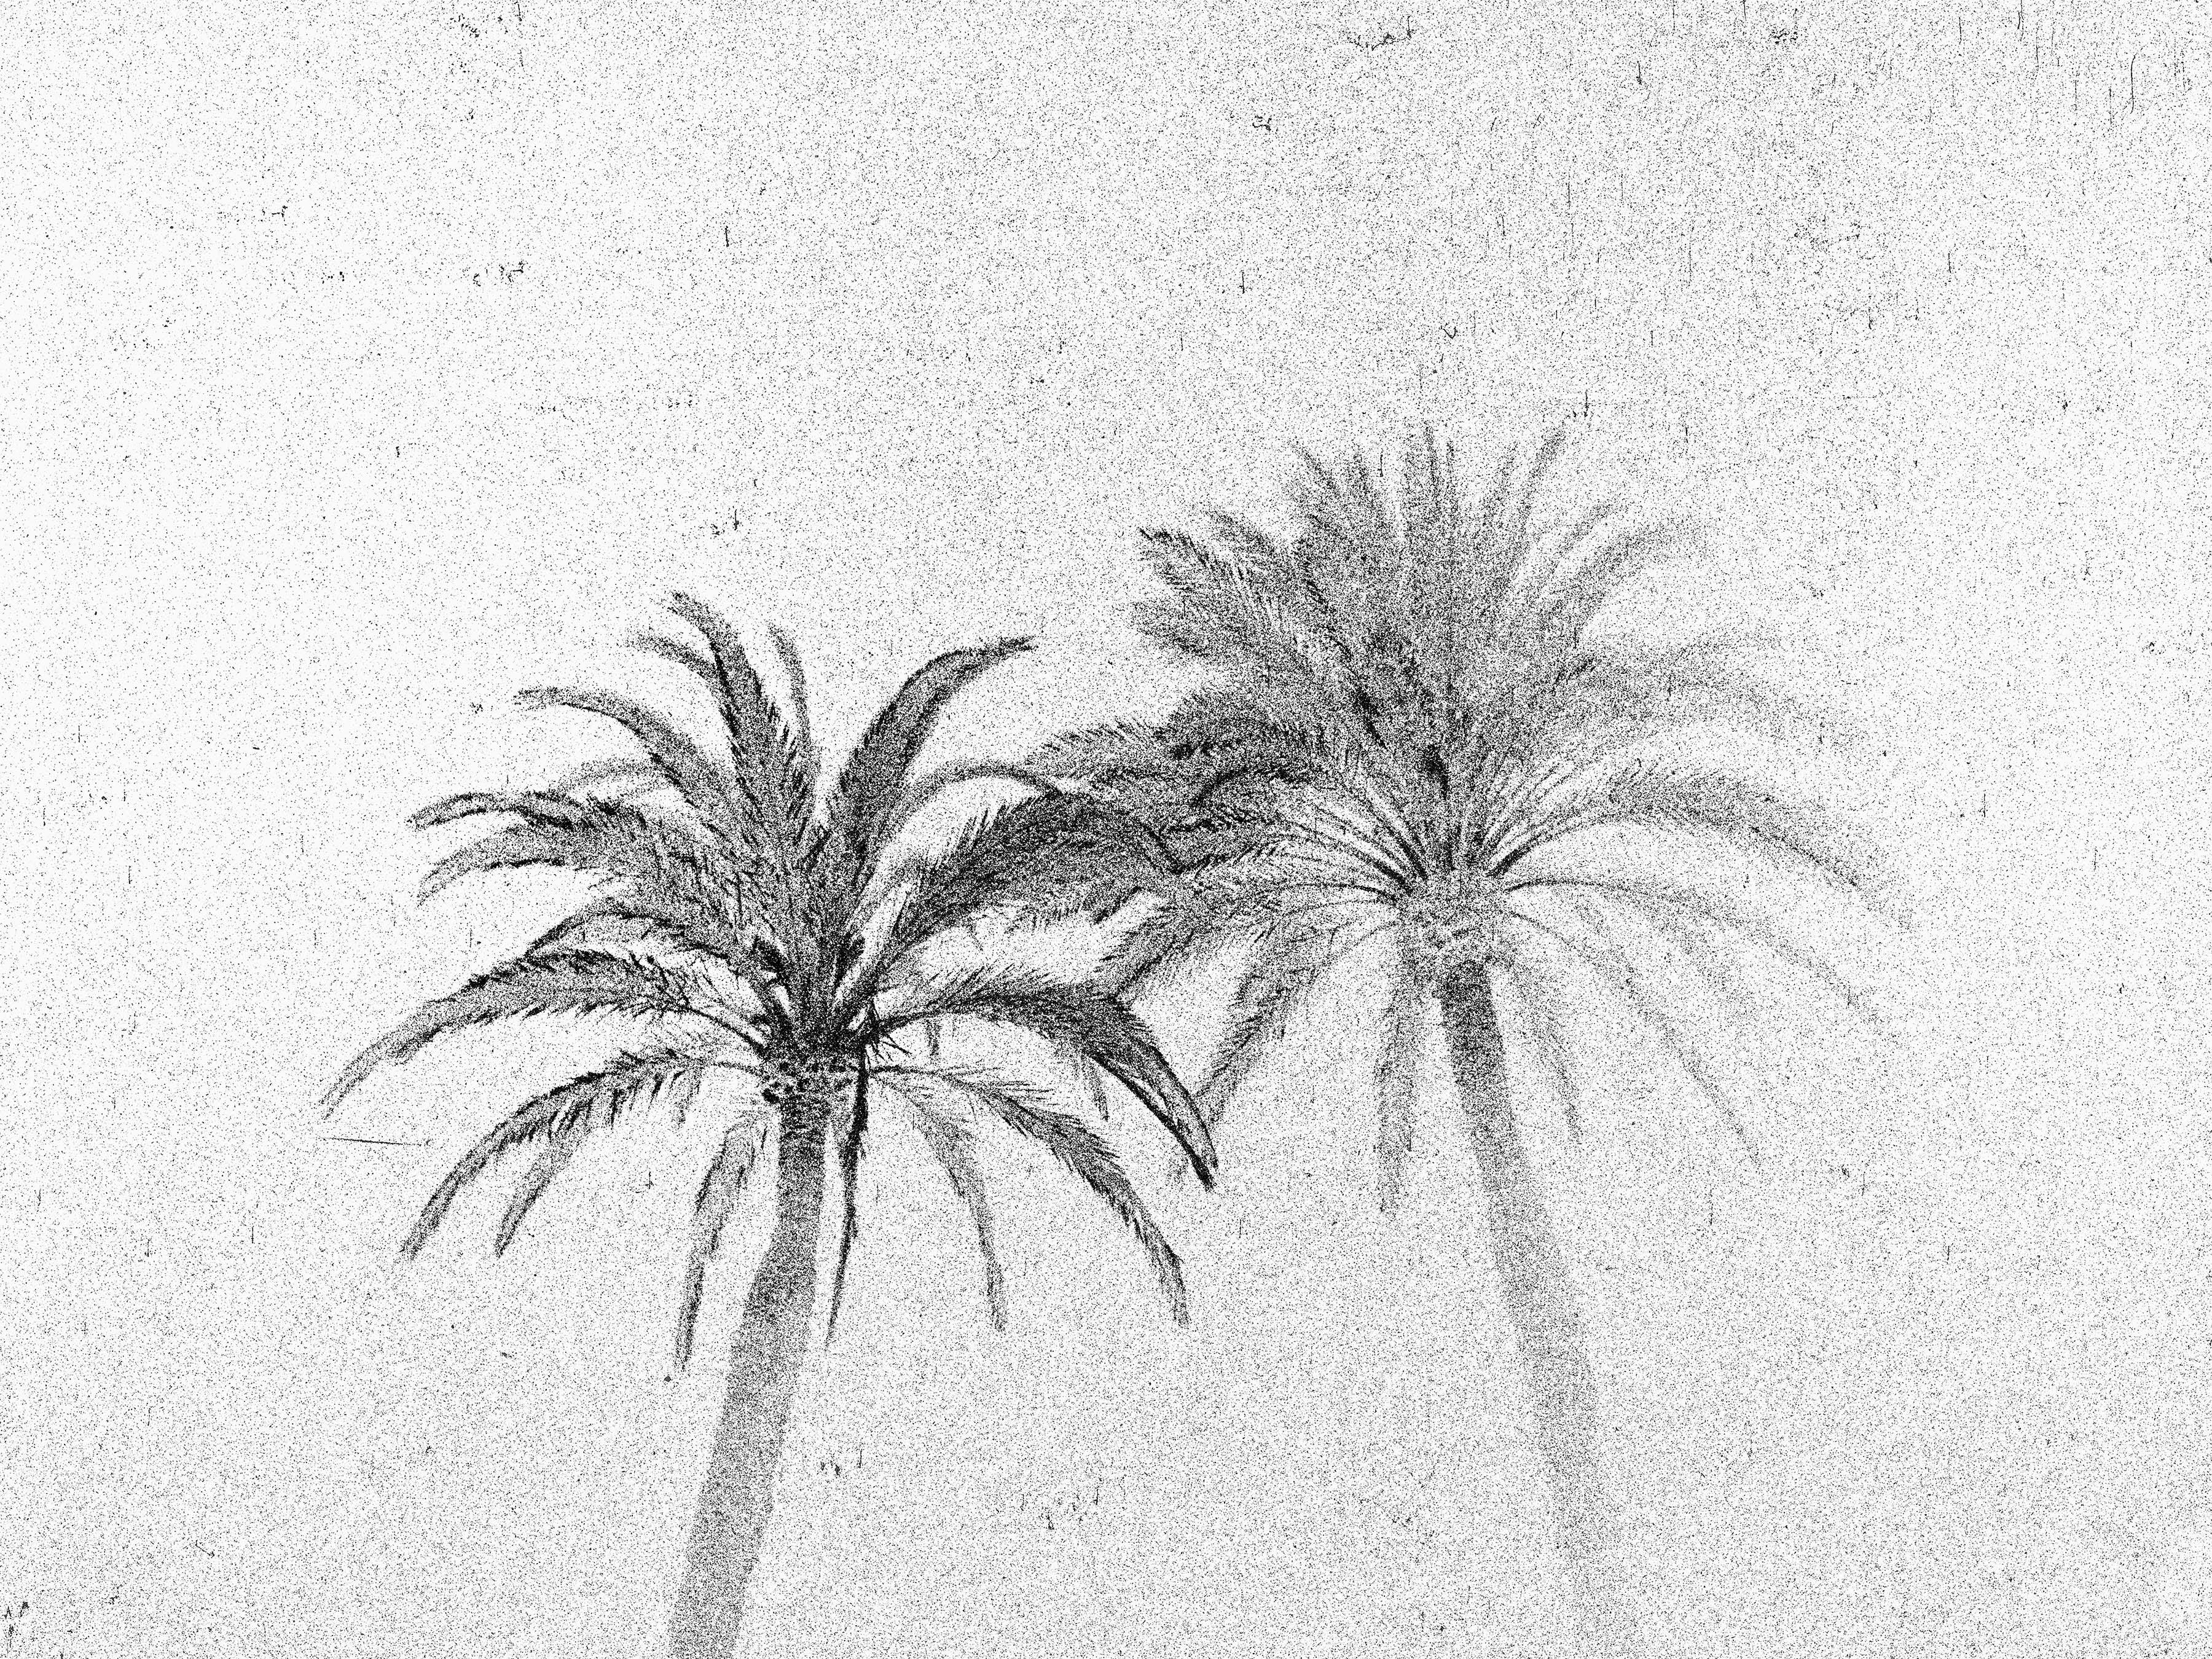 Abend Palmen, Sommerausstellungen, Barcelona – Schwarz-Weiß-Foto, Palmenbäume